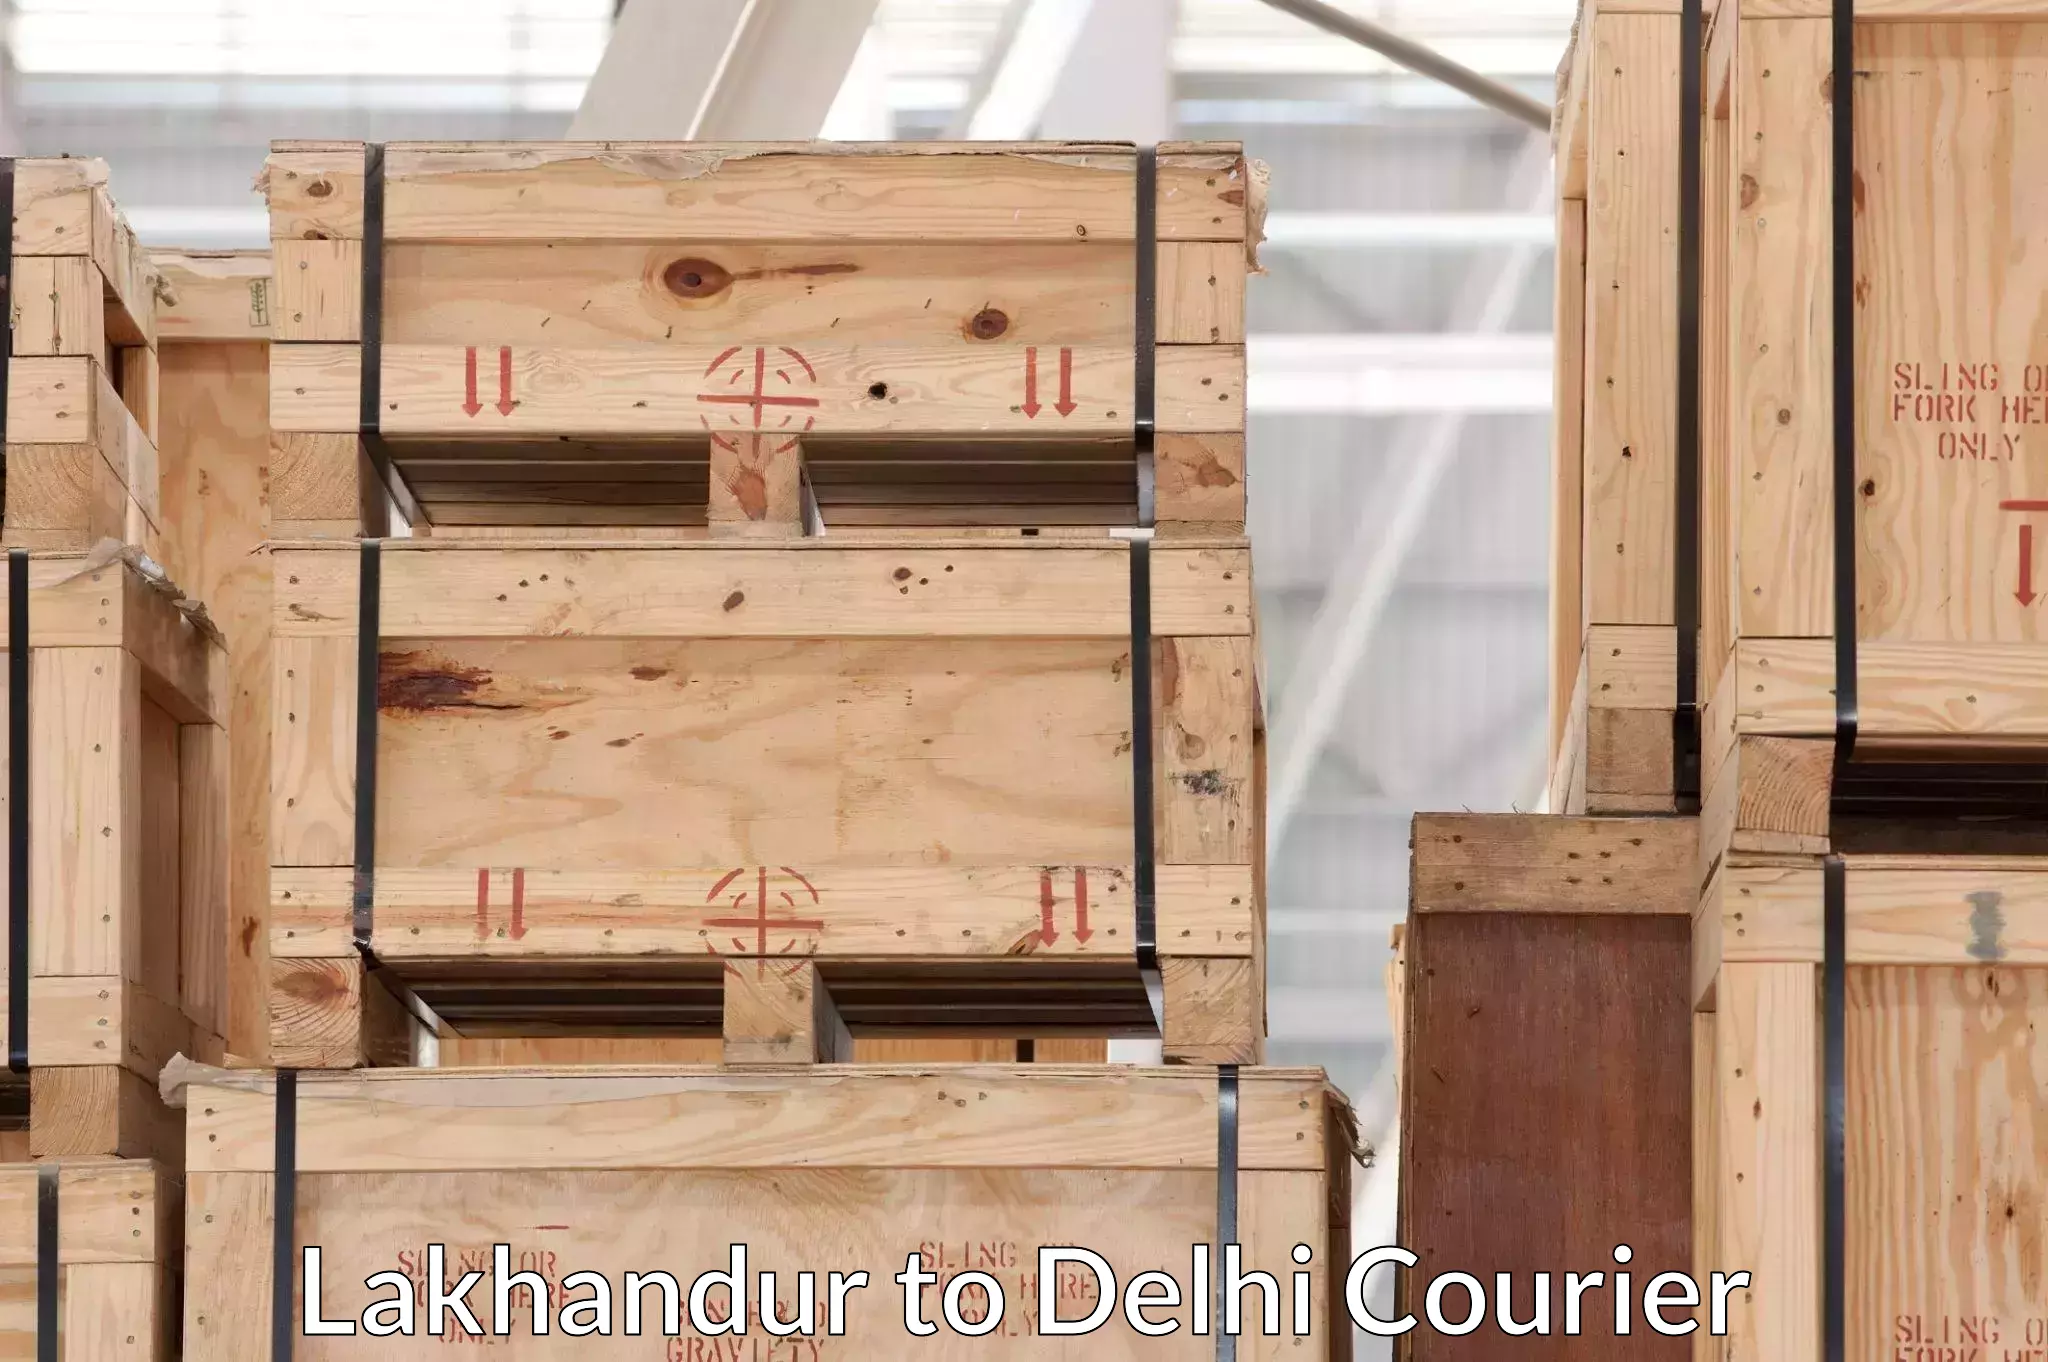 Safe home goods transport Lakhandur to Delhi